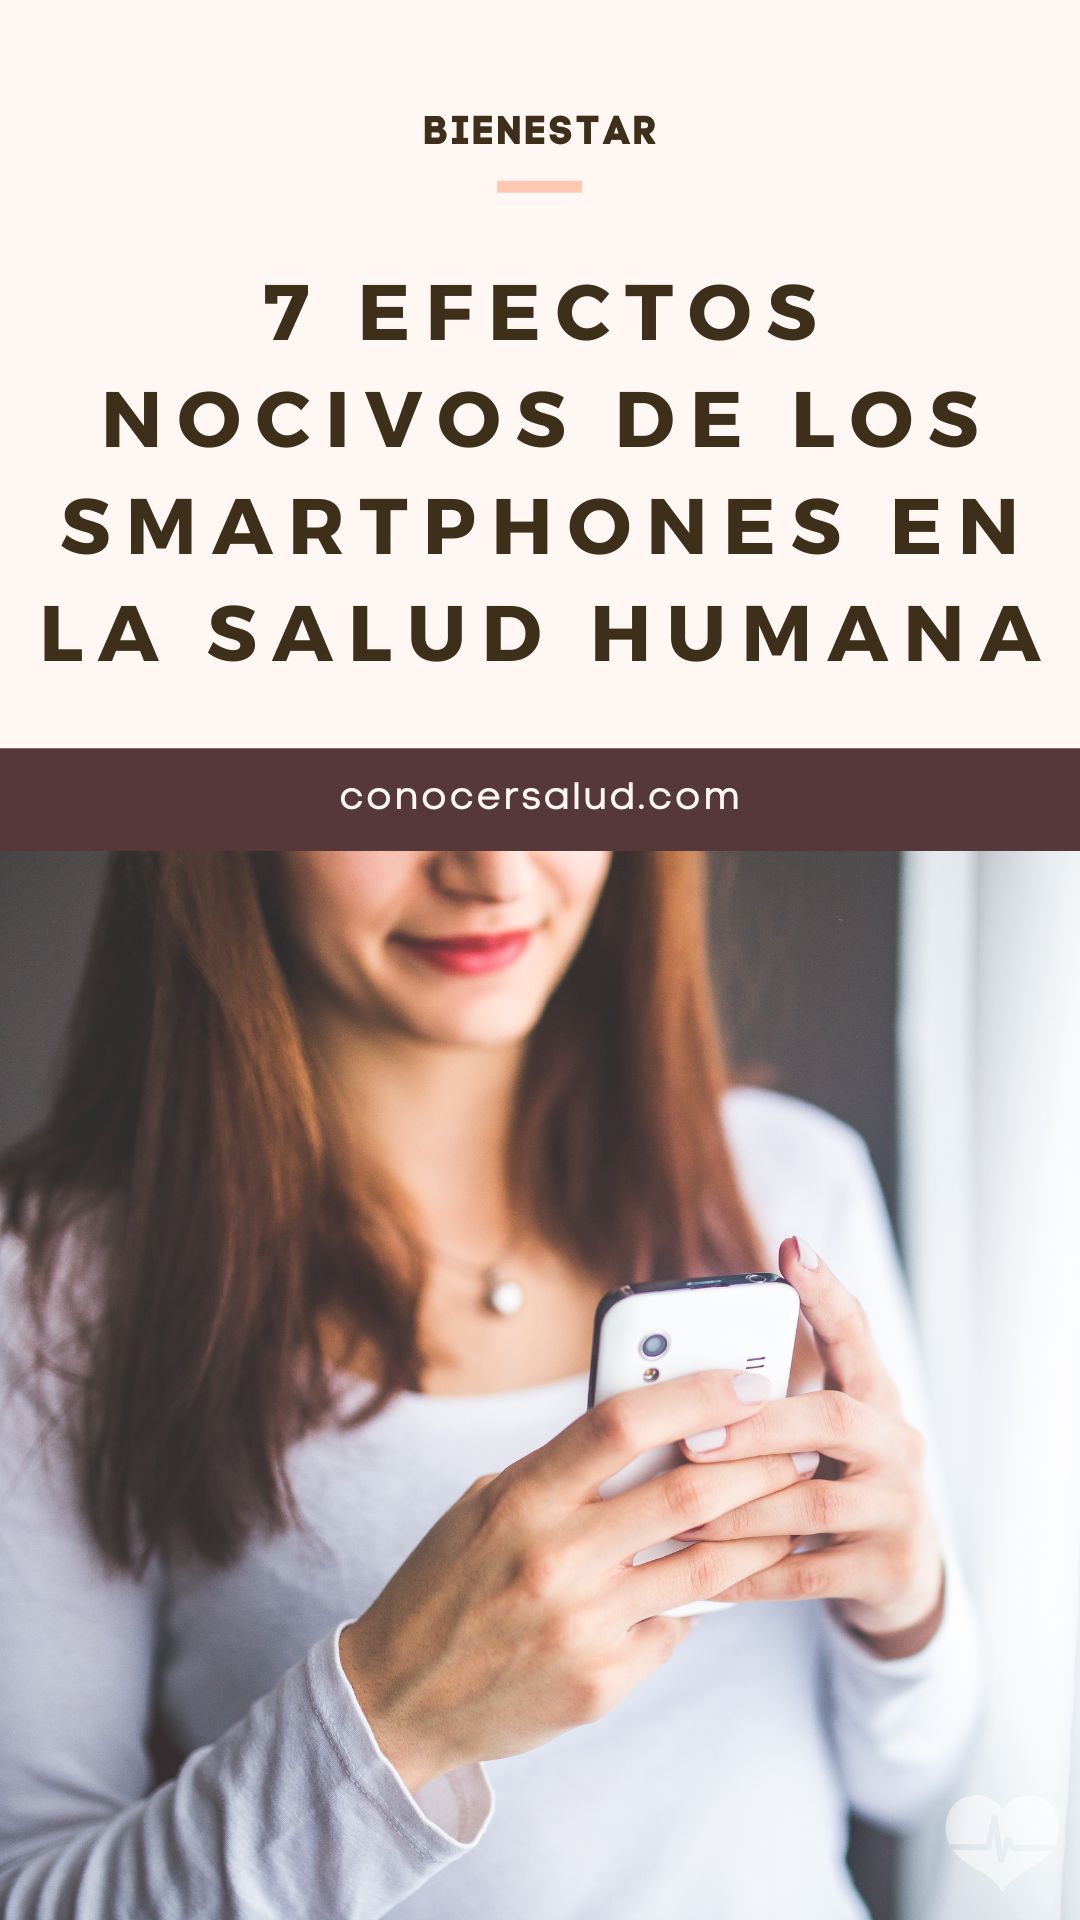 7 efectos nocivos de los smartphones en la salud humana